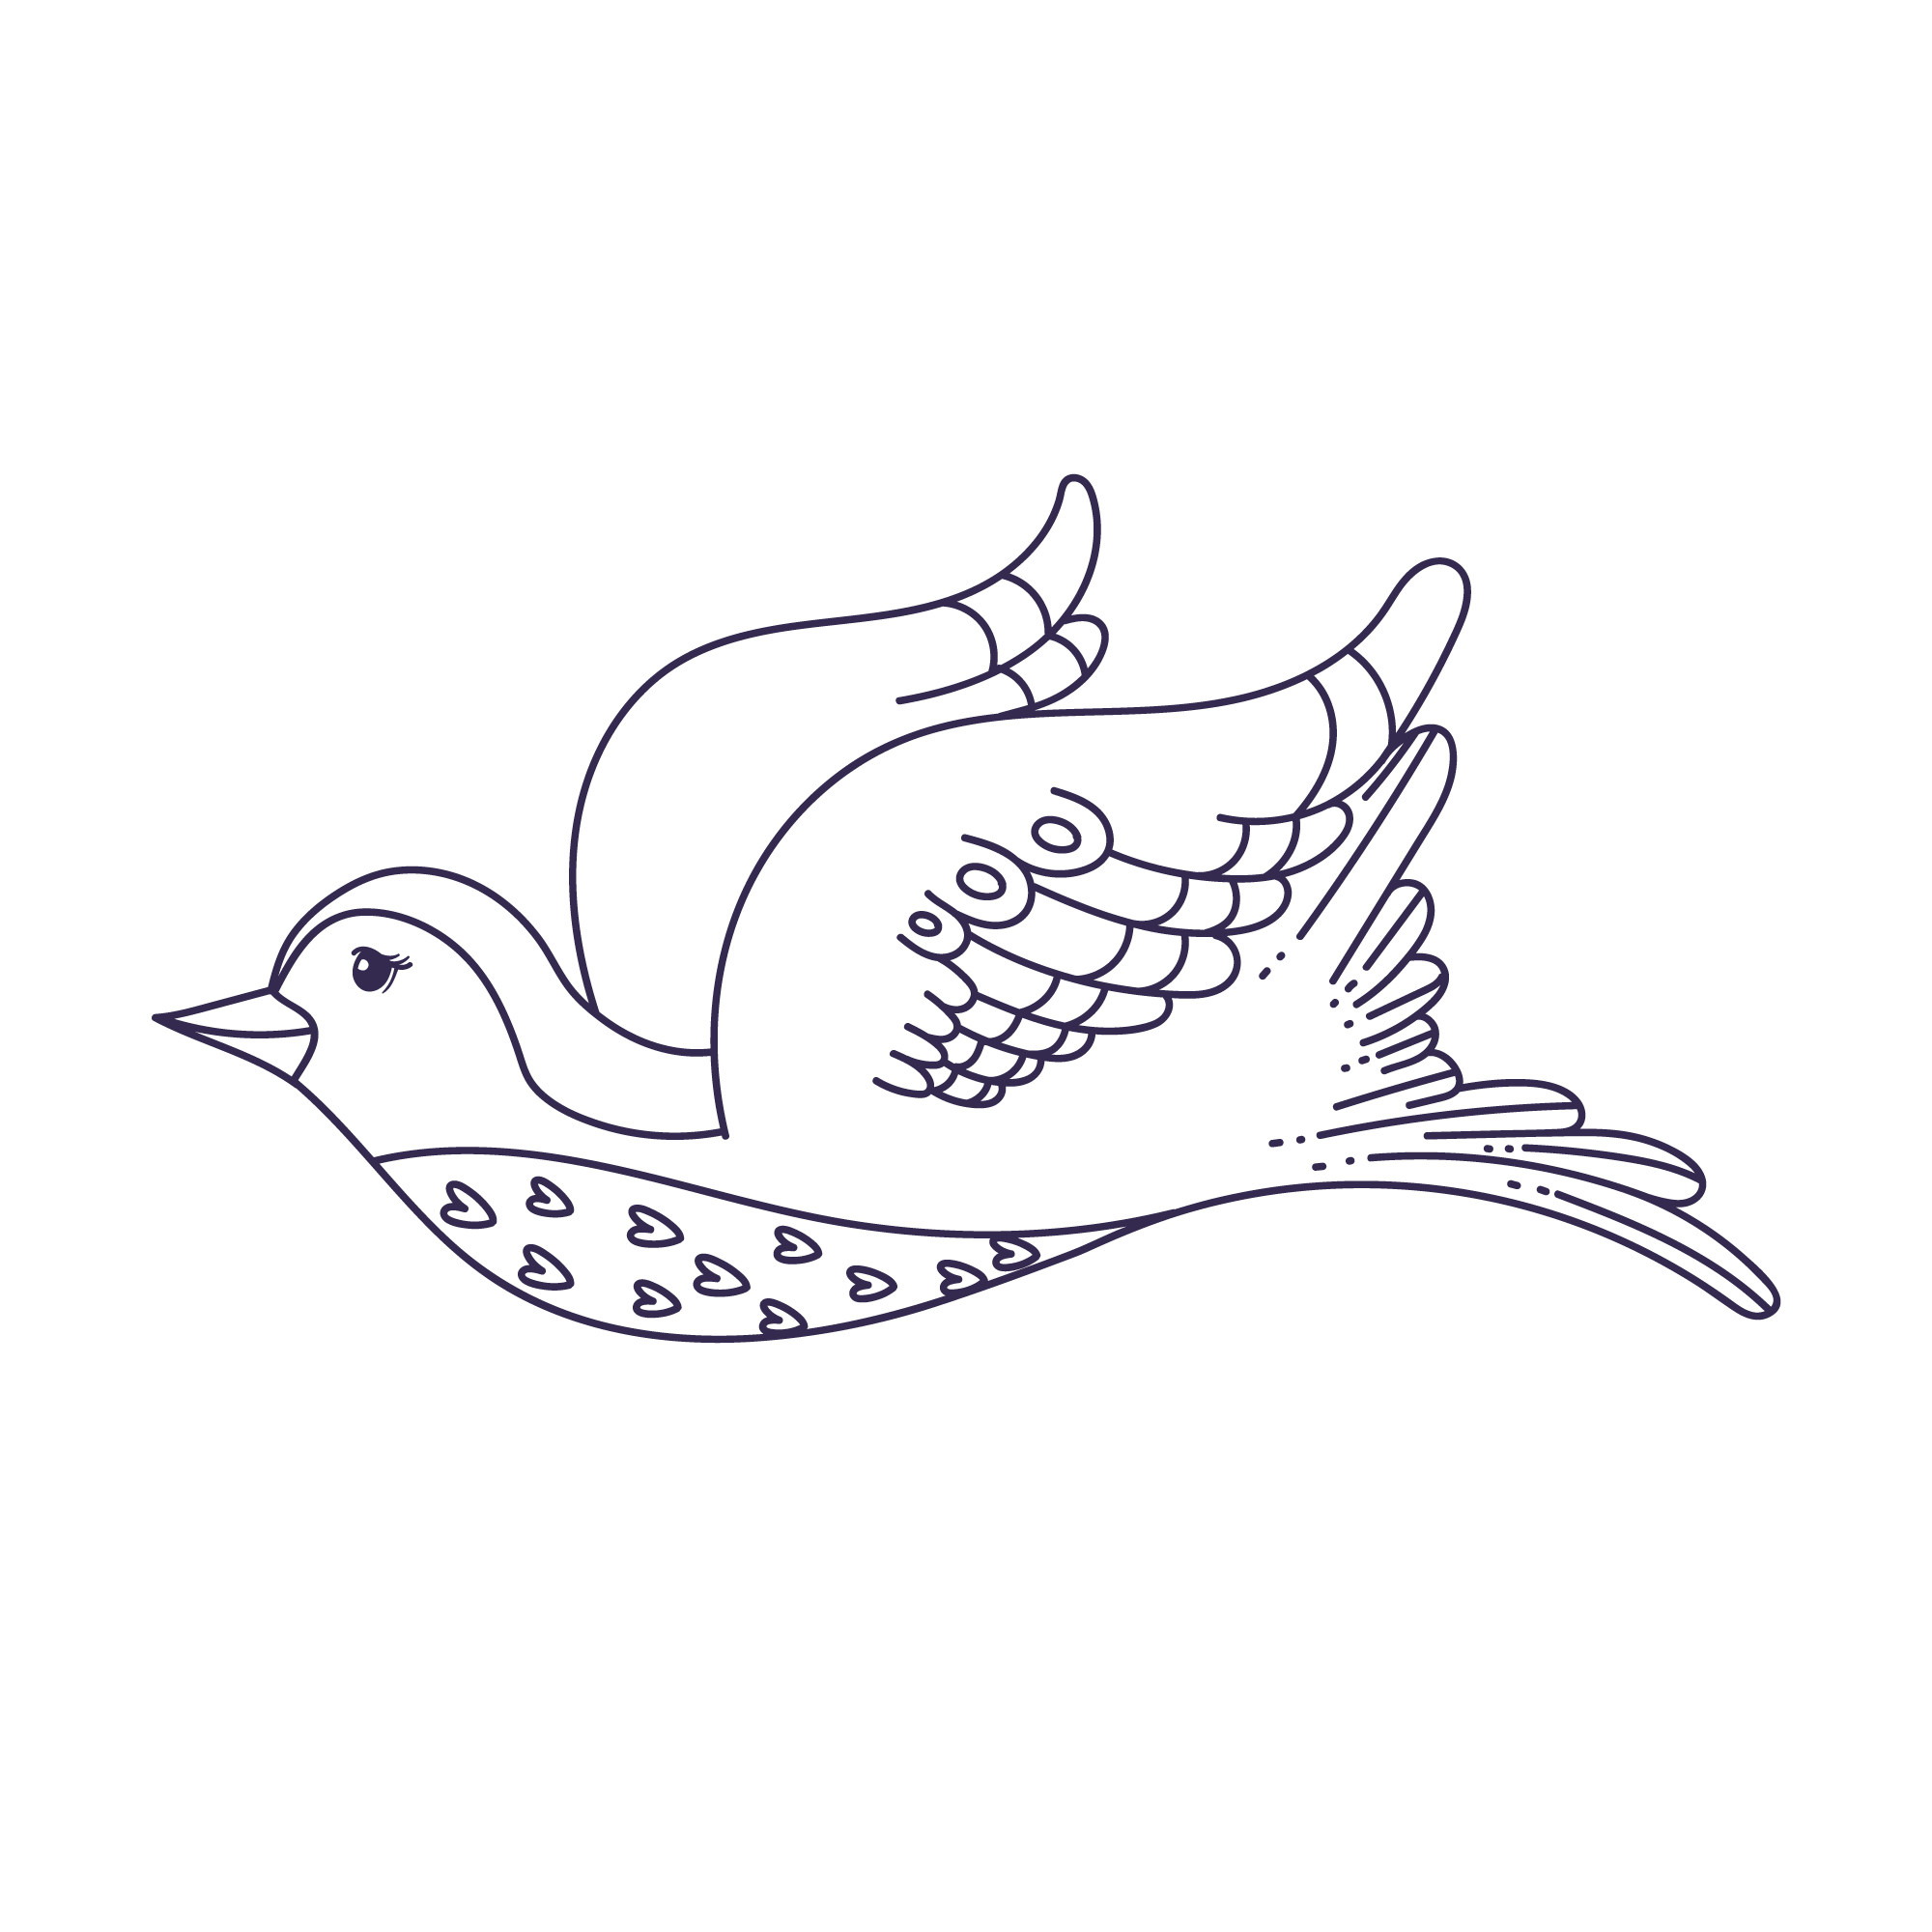 Раскраска для детей: сказочная птица с красивым оперением